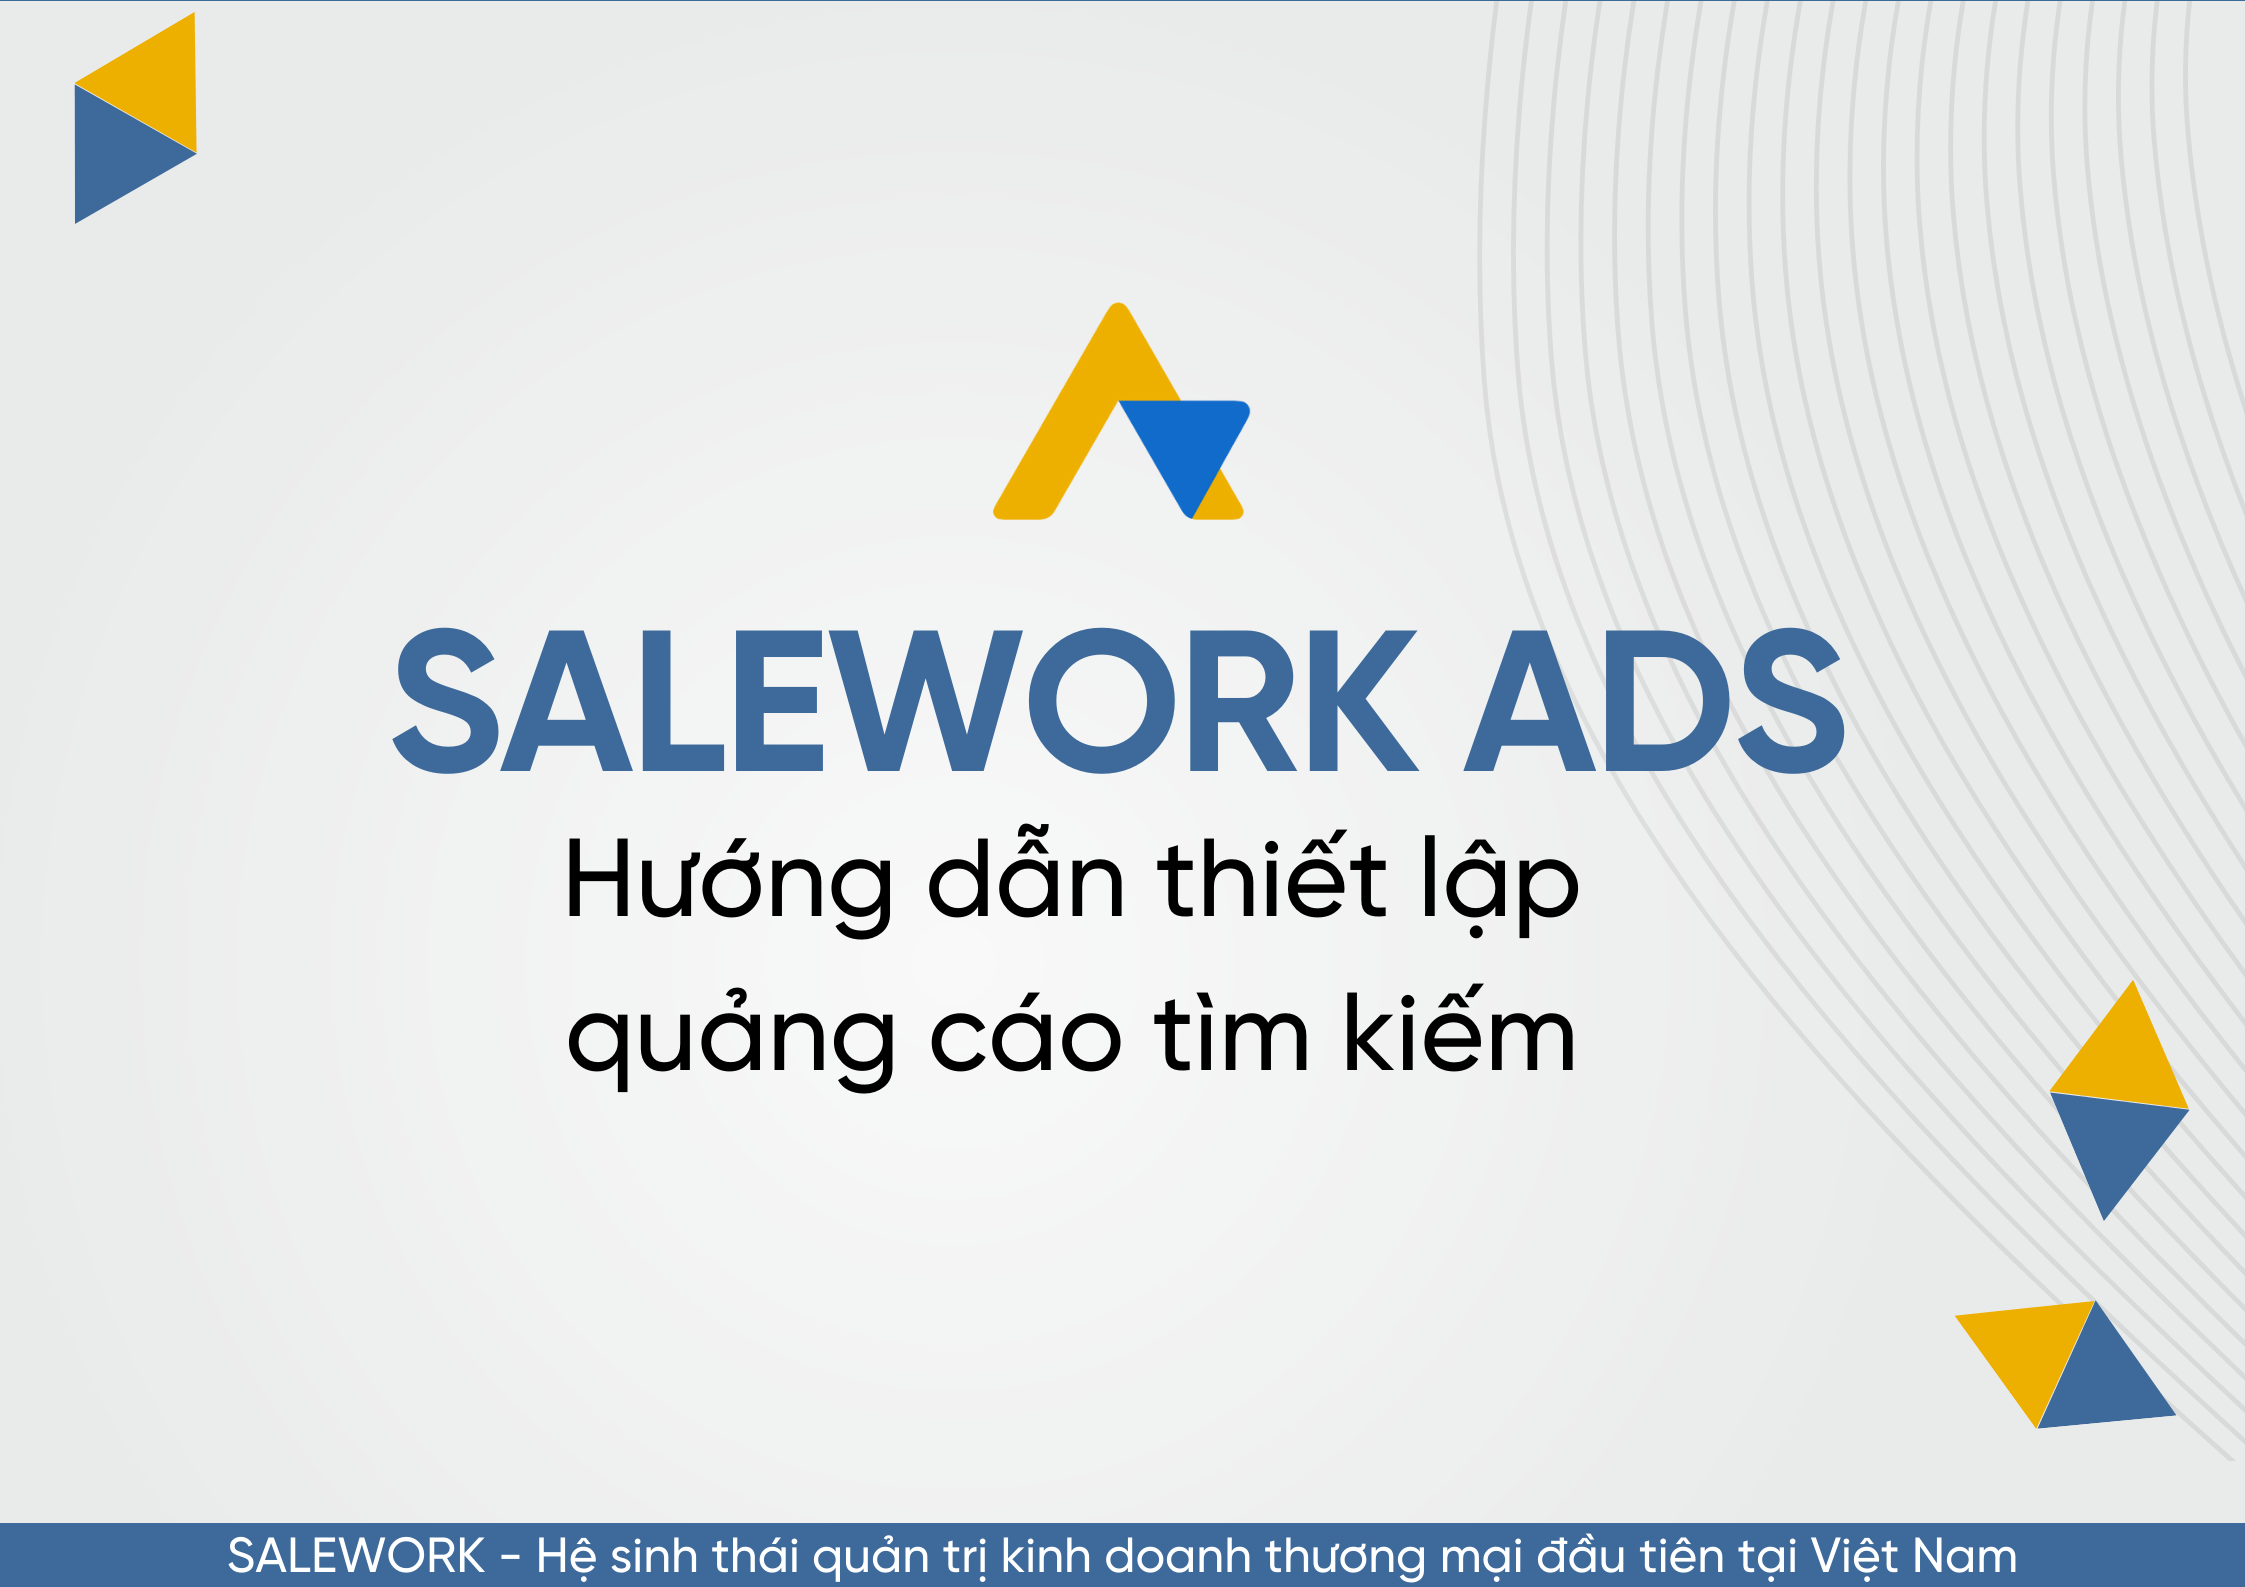 Hướng dẫn thiết lập quảng cáo tìm kiếm tại Salework Ads - 28